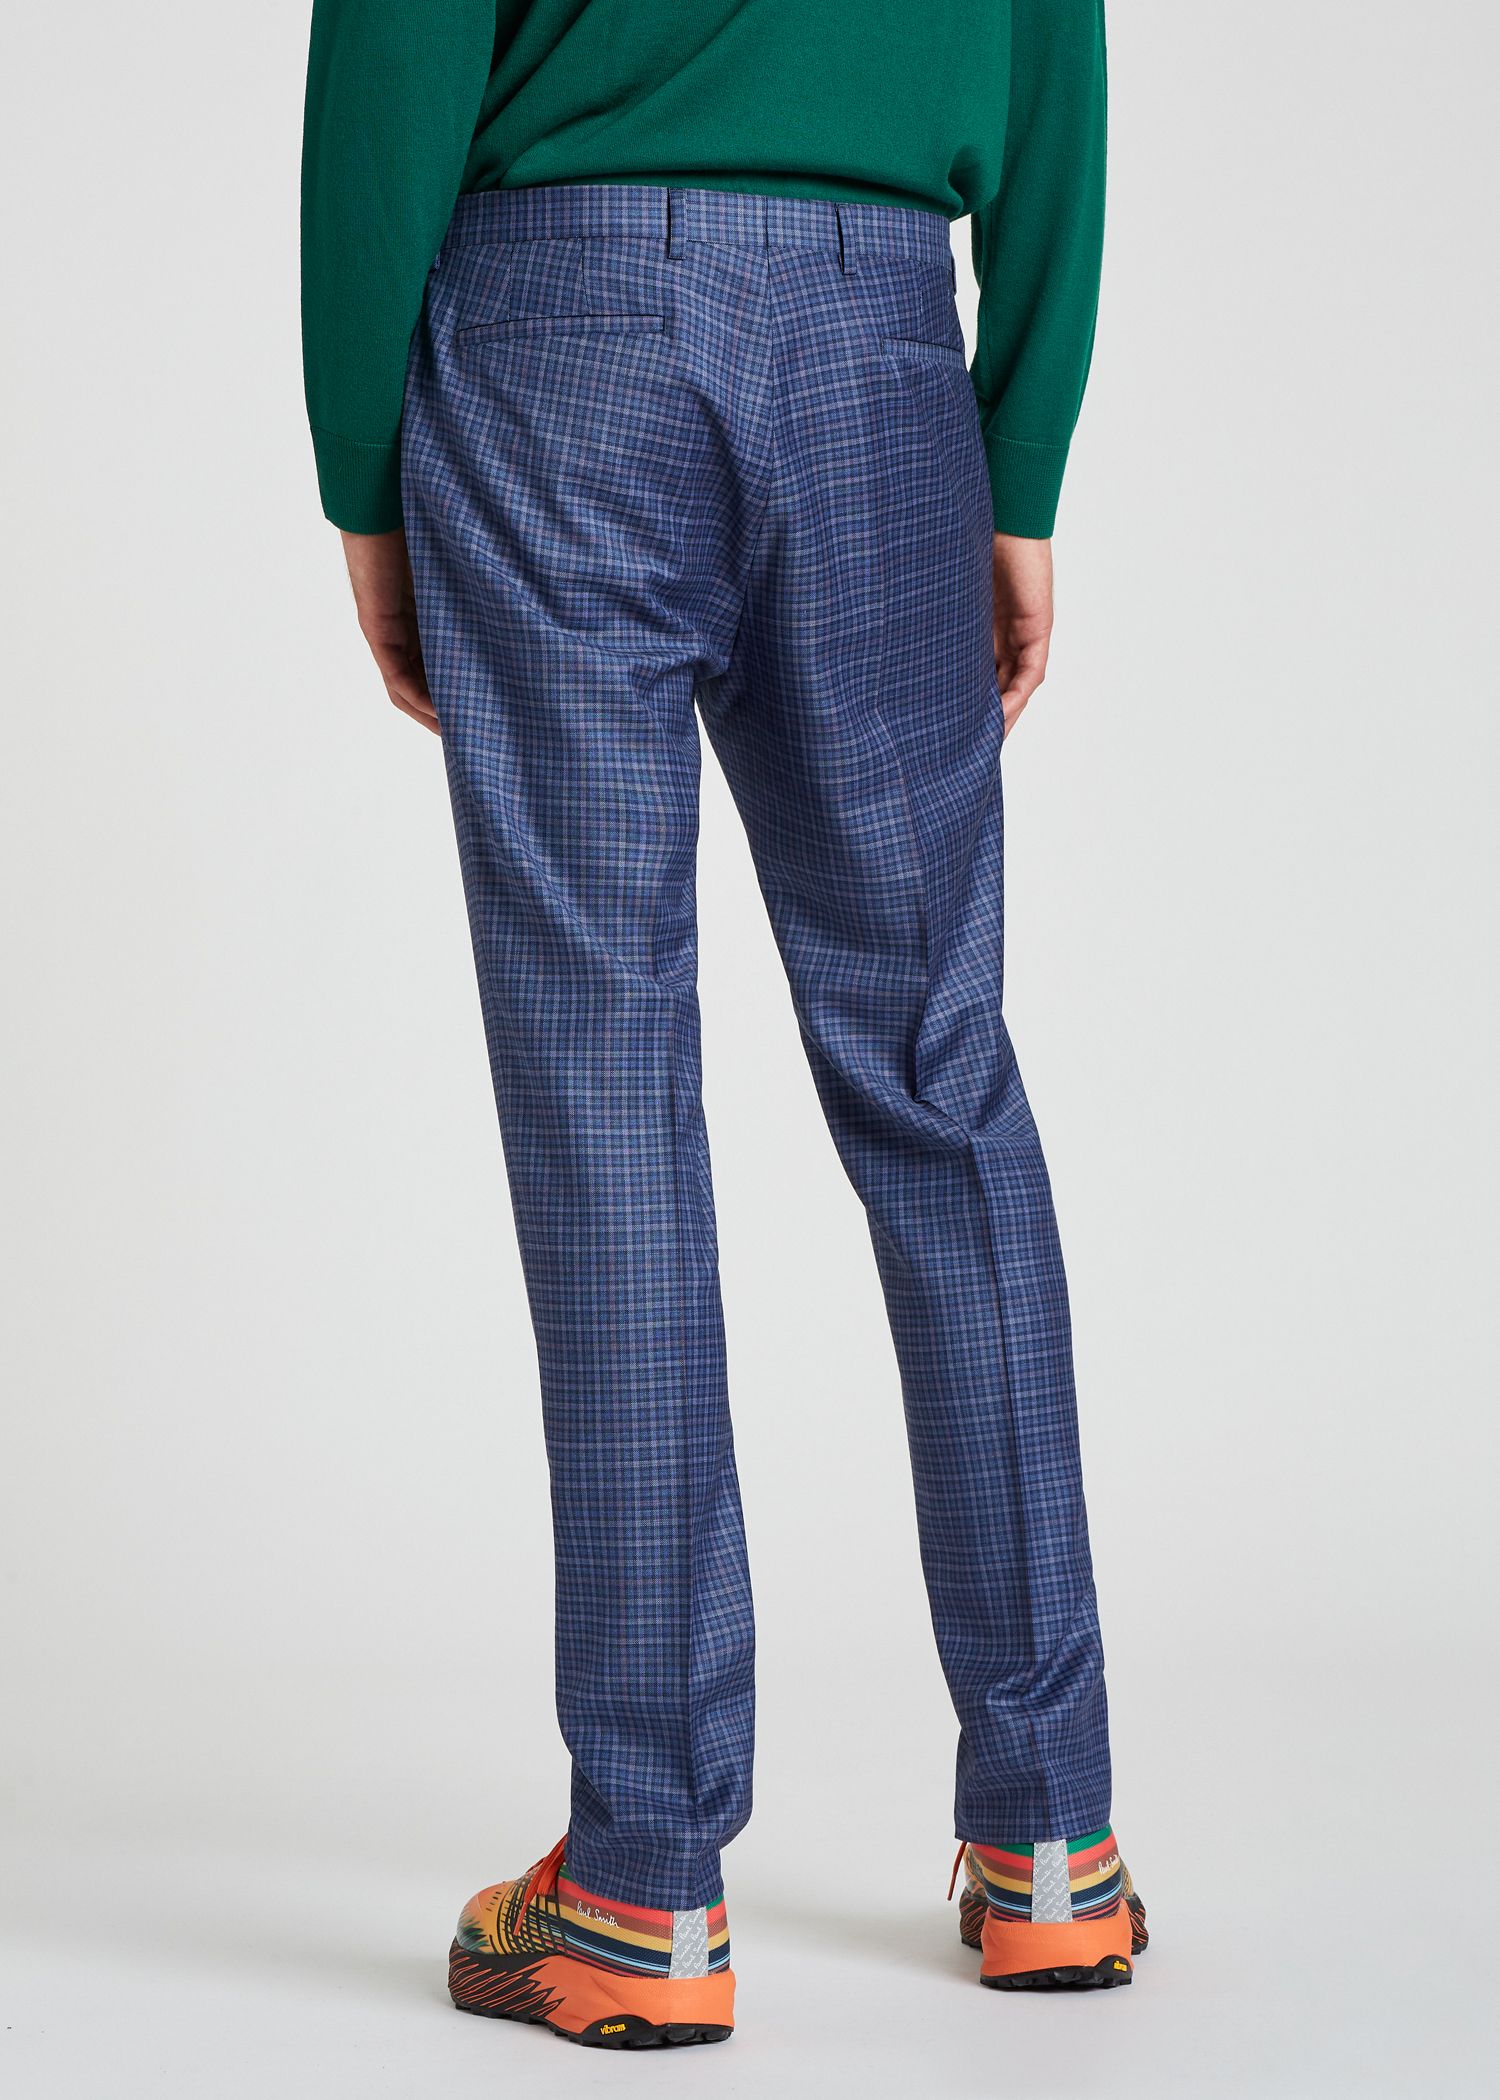 Men's Slim-Fit Light Blue Check Wool Suit - Paul Smith US